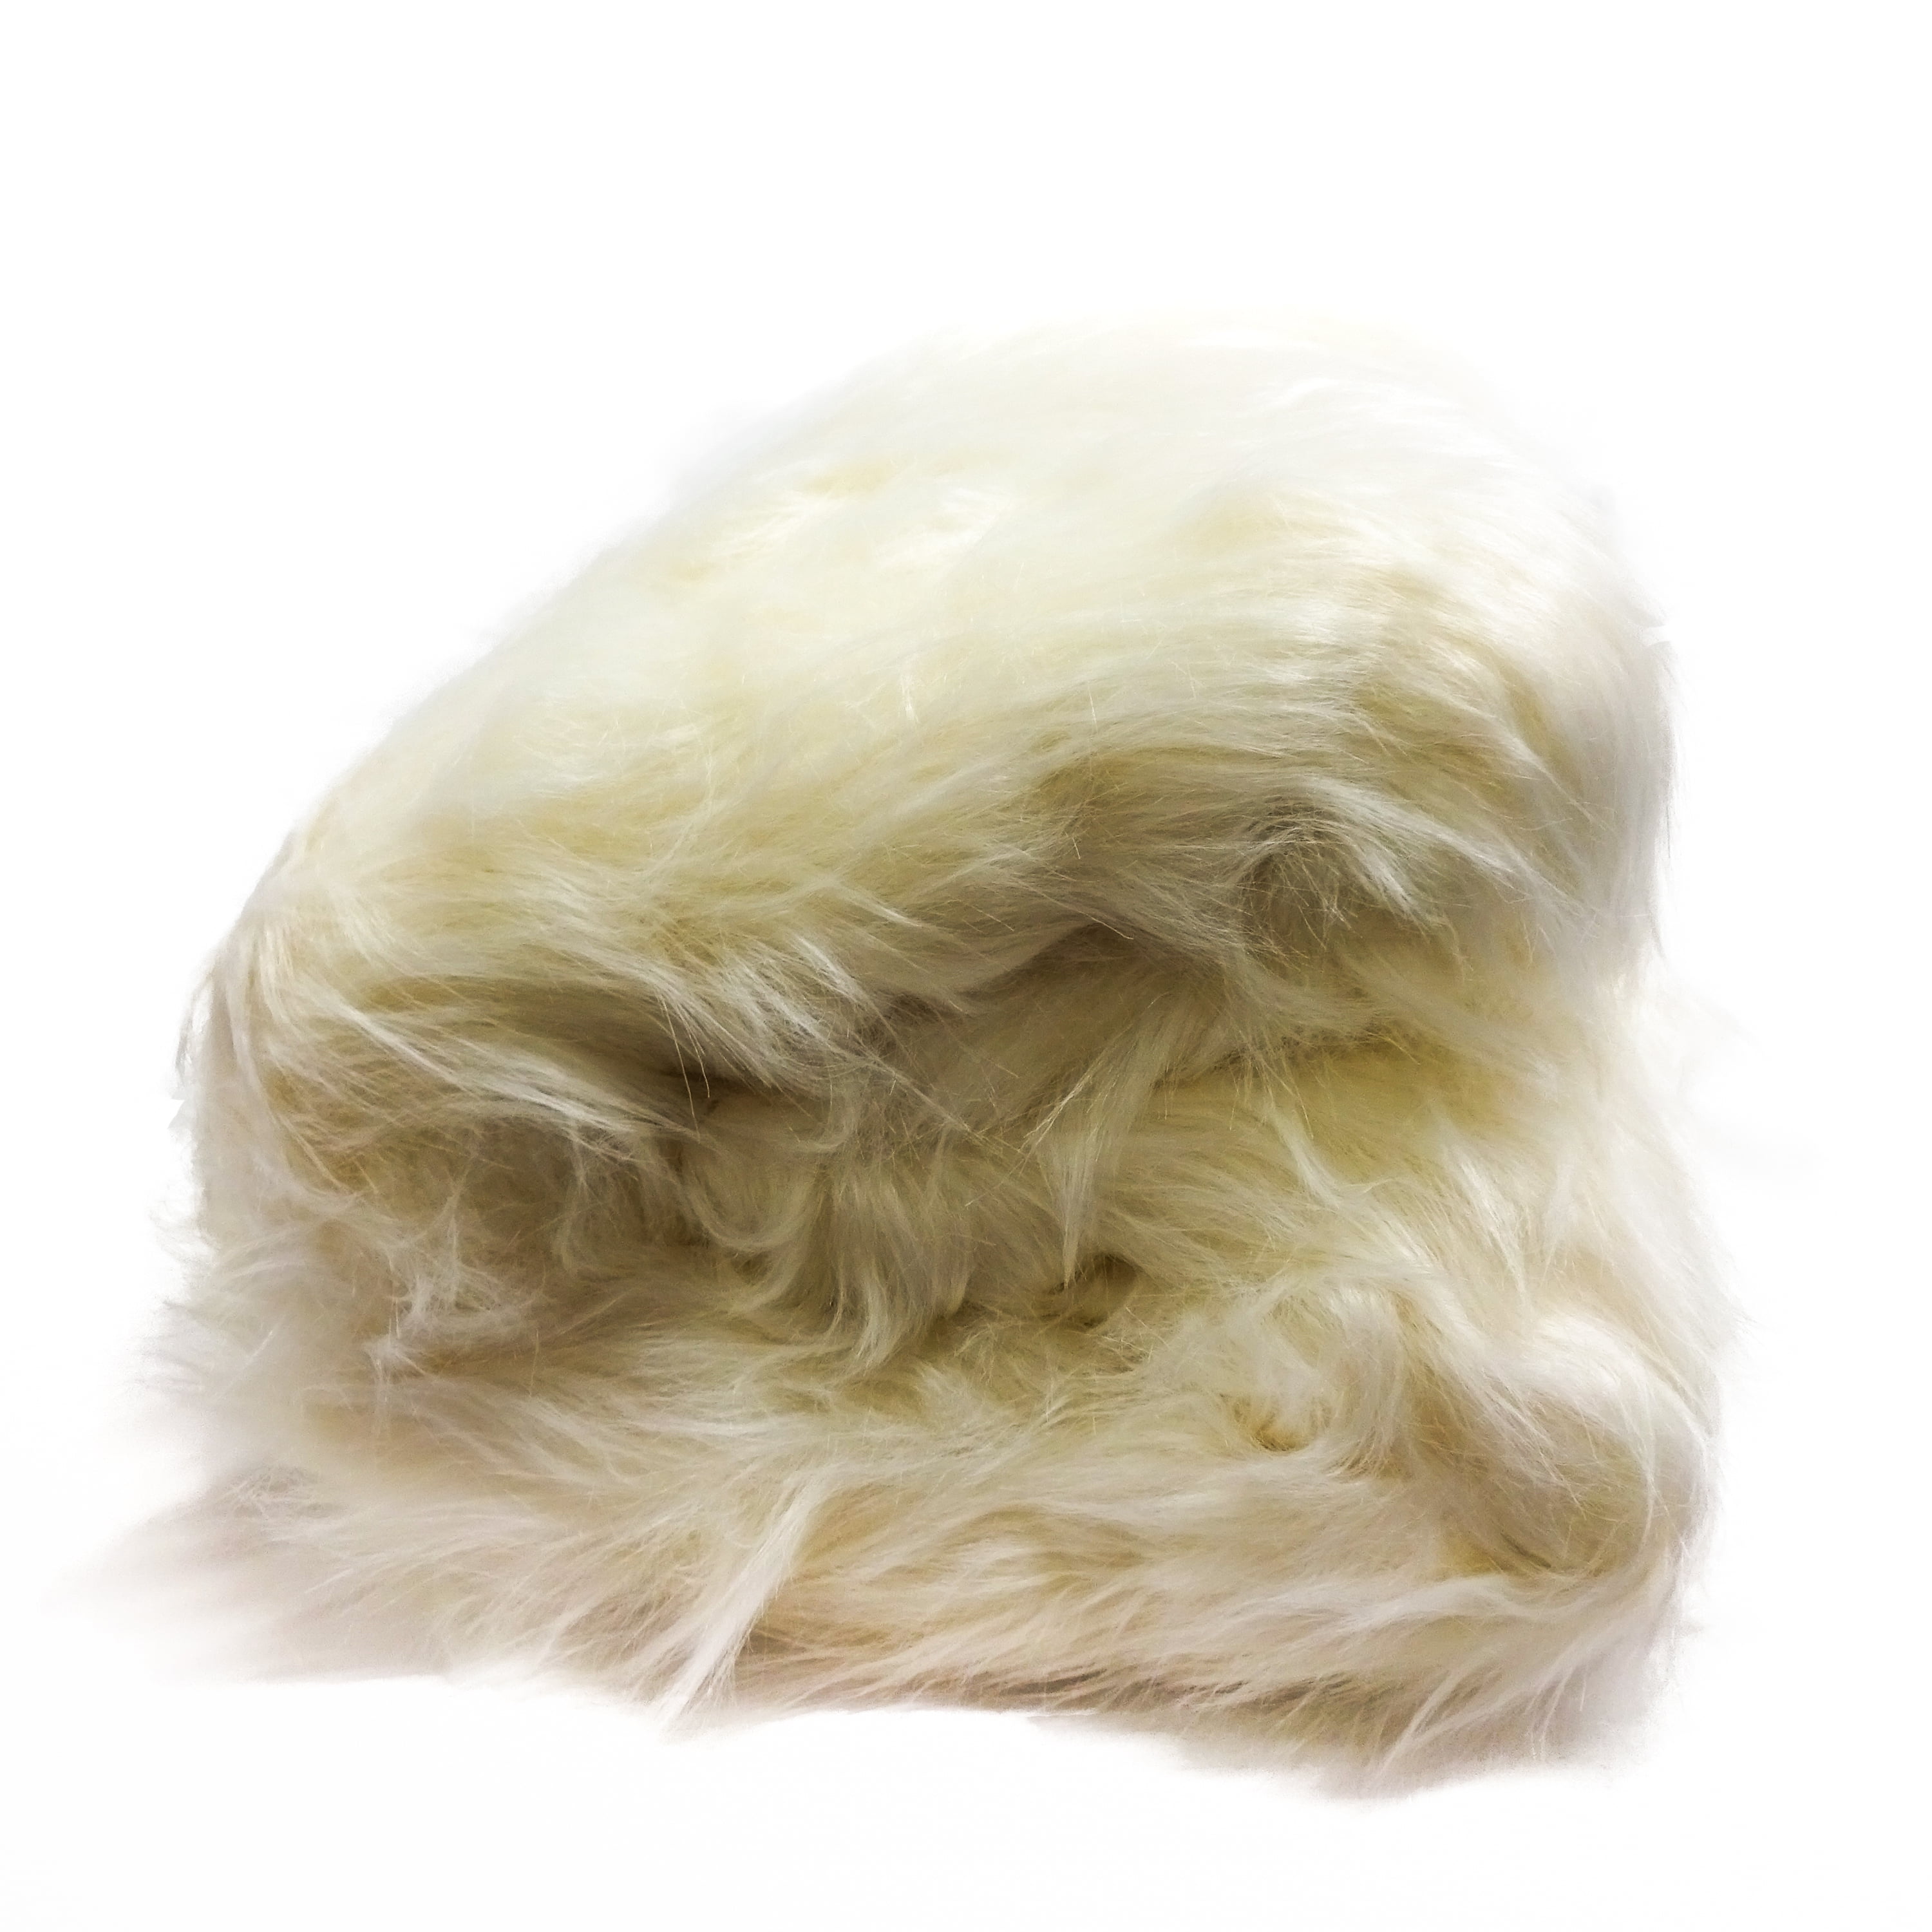 Soft Double Tone Polar Bear Shaggy Faux Fur Fabric - IceFabrics